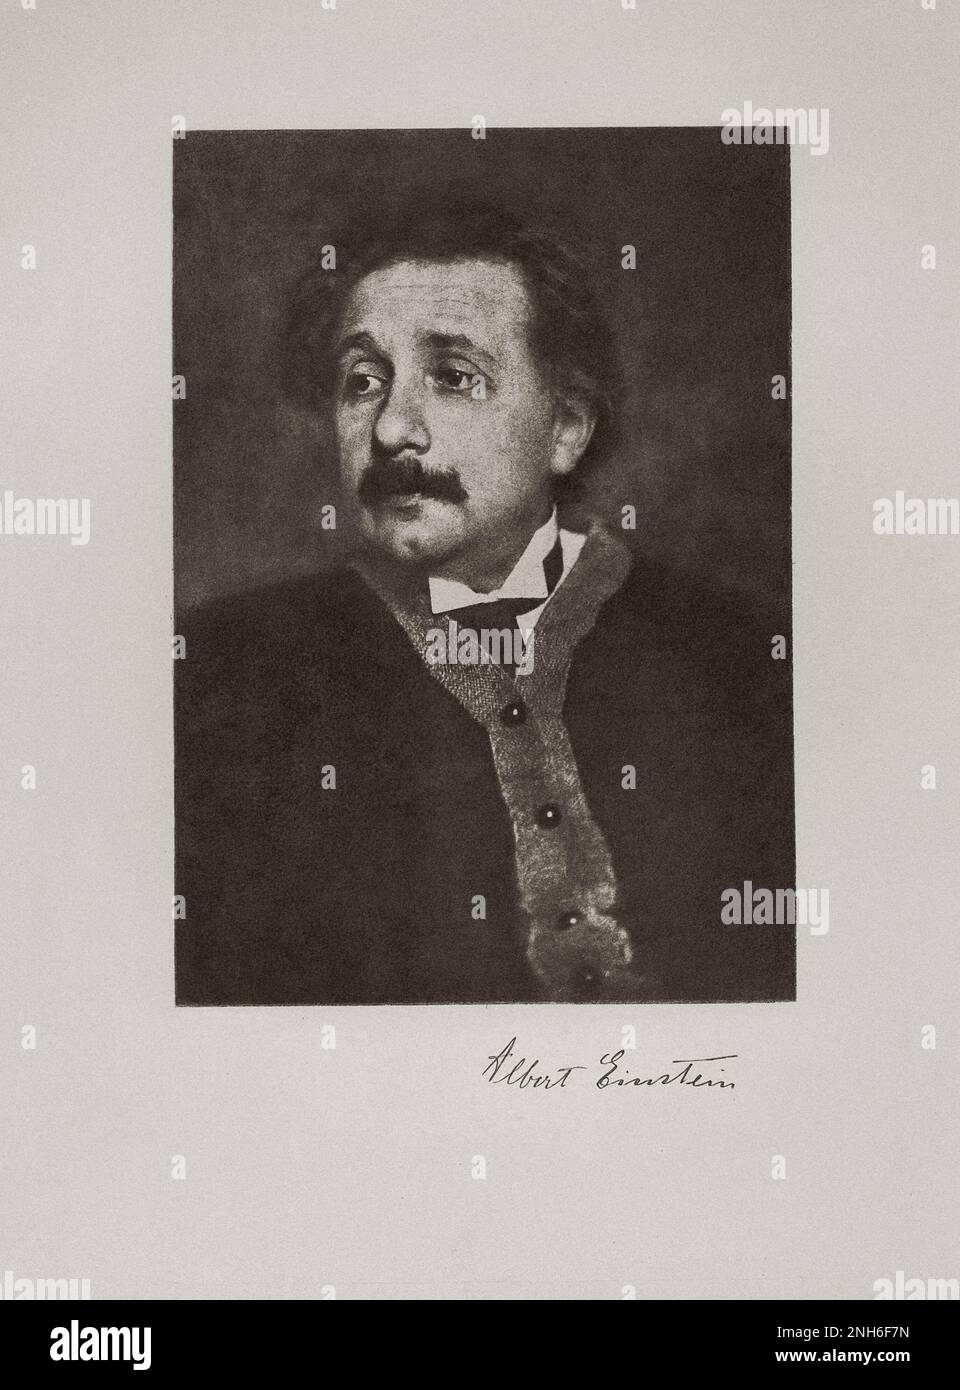 Albert Einstein (1879-1955) war ein in Deutschland geborener theoretischer Physiker, der die Relativitätstheorie entwickelte, eine der beiden Säulen der modernen Physik (neben der Quantenmechanik). Seine Arbeit ist auch für ihren Einfluss auf die Philosophie der Wissenschaft bekannt. Er ist in der Öffentlichkeit am bekanntesten für seine Masse-Energie-Äquivalenzformel E = mc2, die als „die berühmteste Gleichung der Welt“ bezeichnet wurde. 1921 erhielt er den Physik-Nobelpreis für seine Dienste für die theoretische Physik und insbesondere für seine Entdeckung des Gesetzes des photoelektrischen Effekts, einen entscheidenden Schritt in der Entwicklung von quan Stockfoto